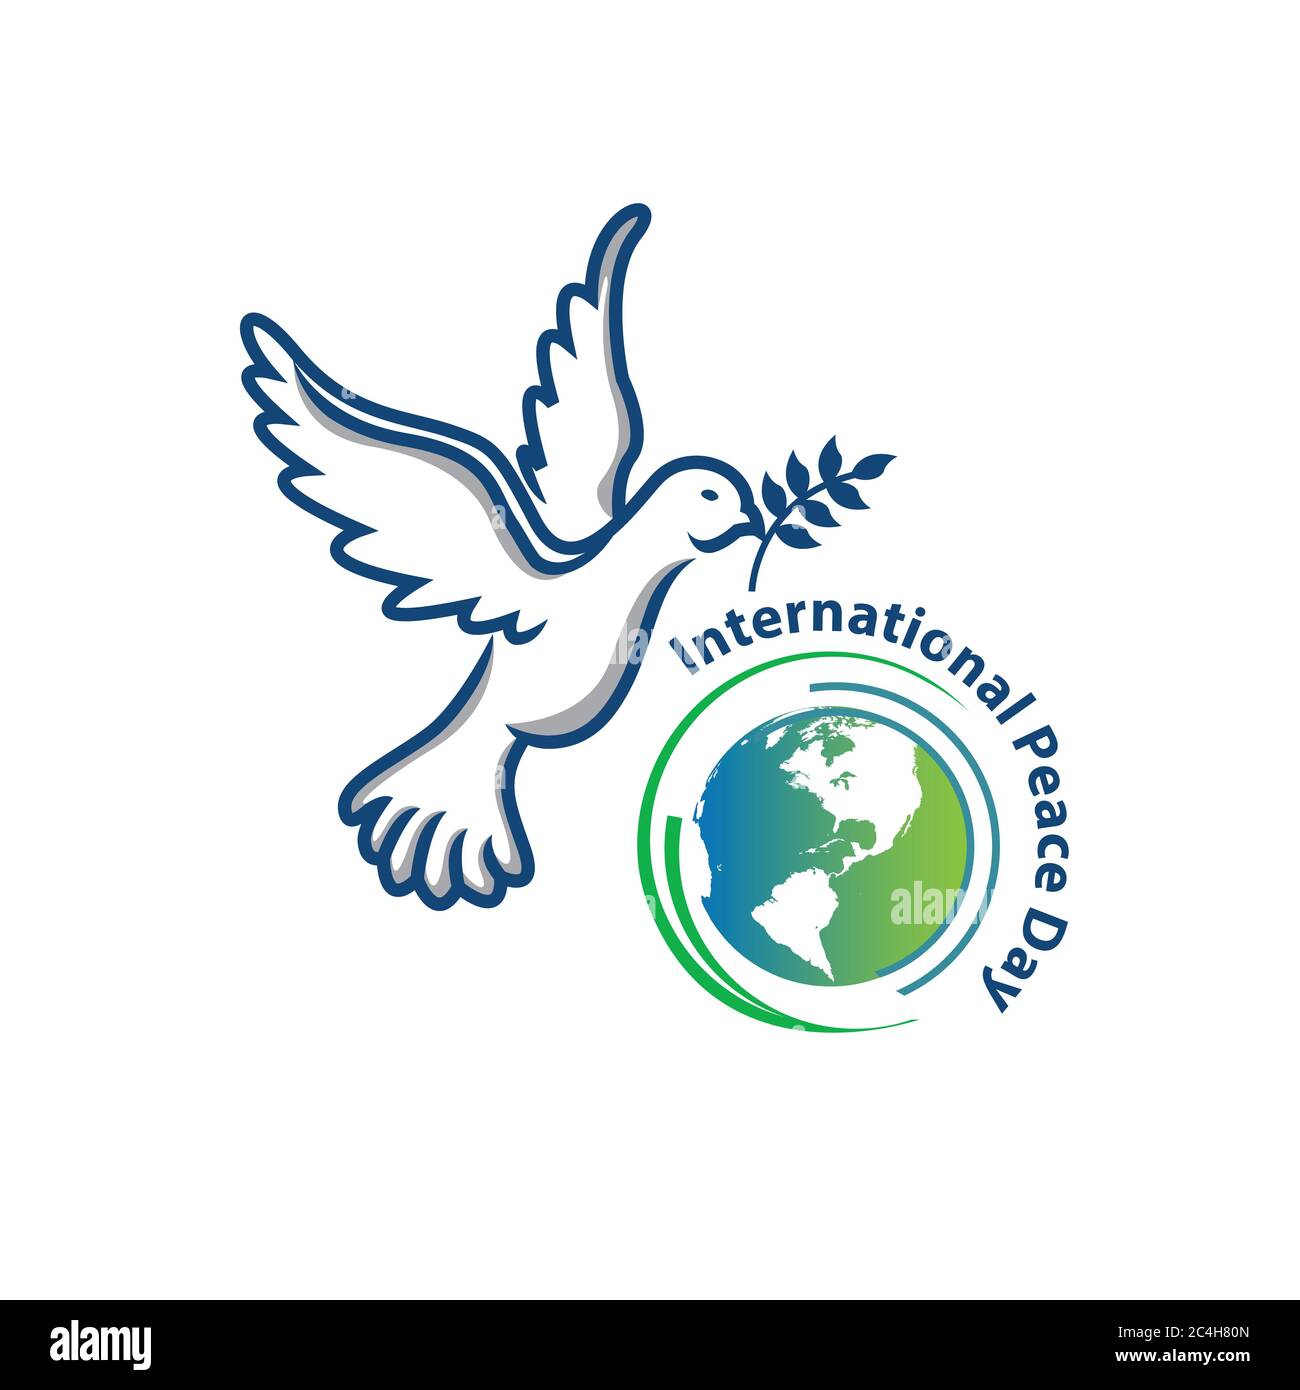 21 septembre, journée internationale de la paix. Illustration concept présent paix monde. Illustration vectorielle. Illustration de Vecteur